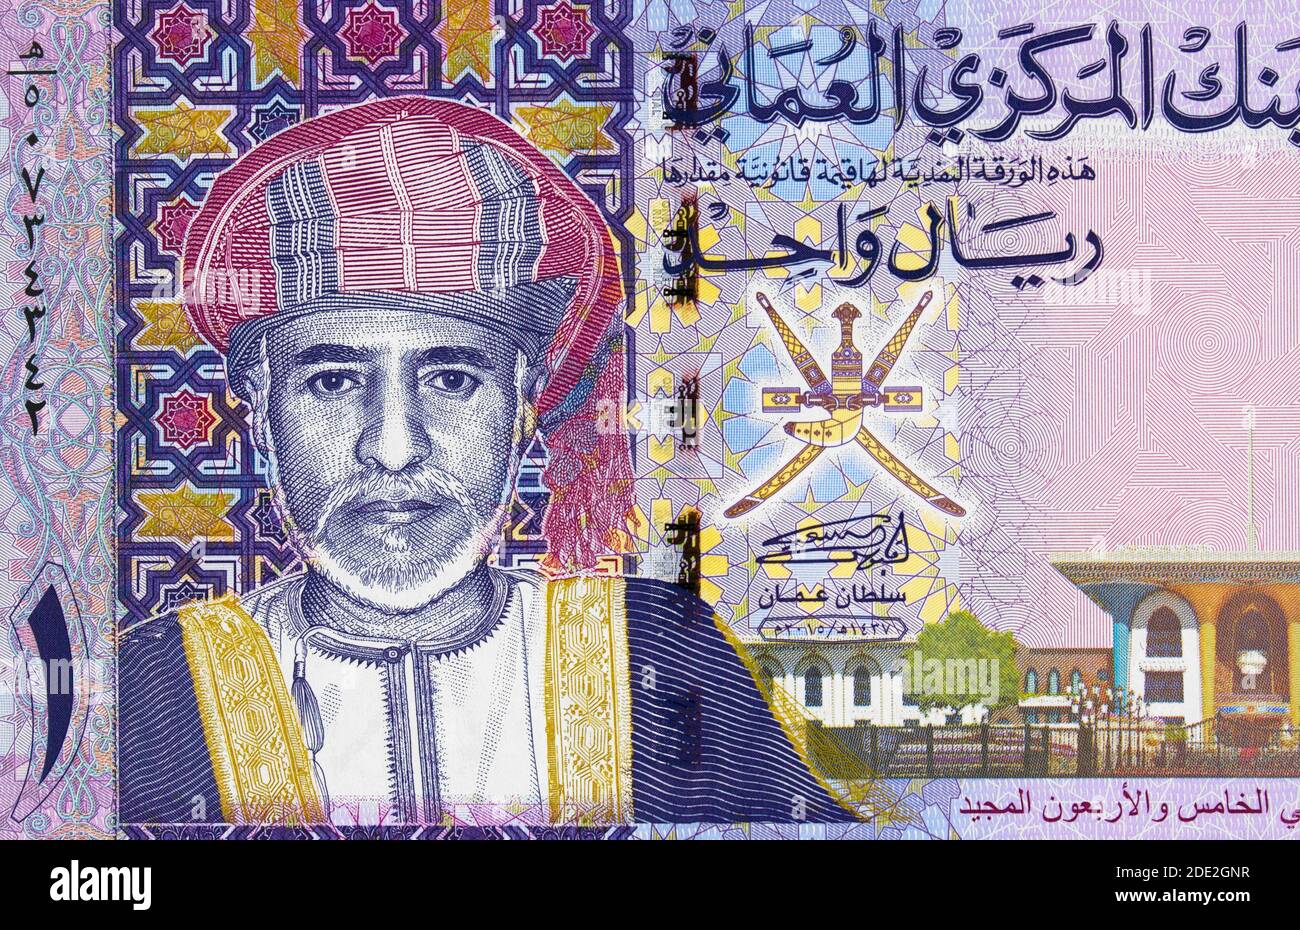 Sultan Qaboos bin a dit al a dit portrait sur le Oman 1 rial (2015) billet de banque gros vers le haut, Omani argent gros-up Banque D'Images